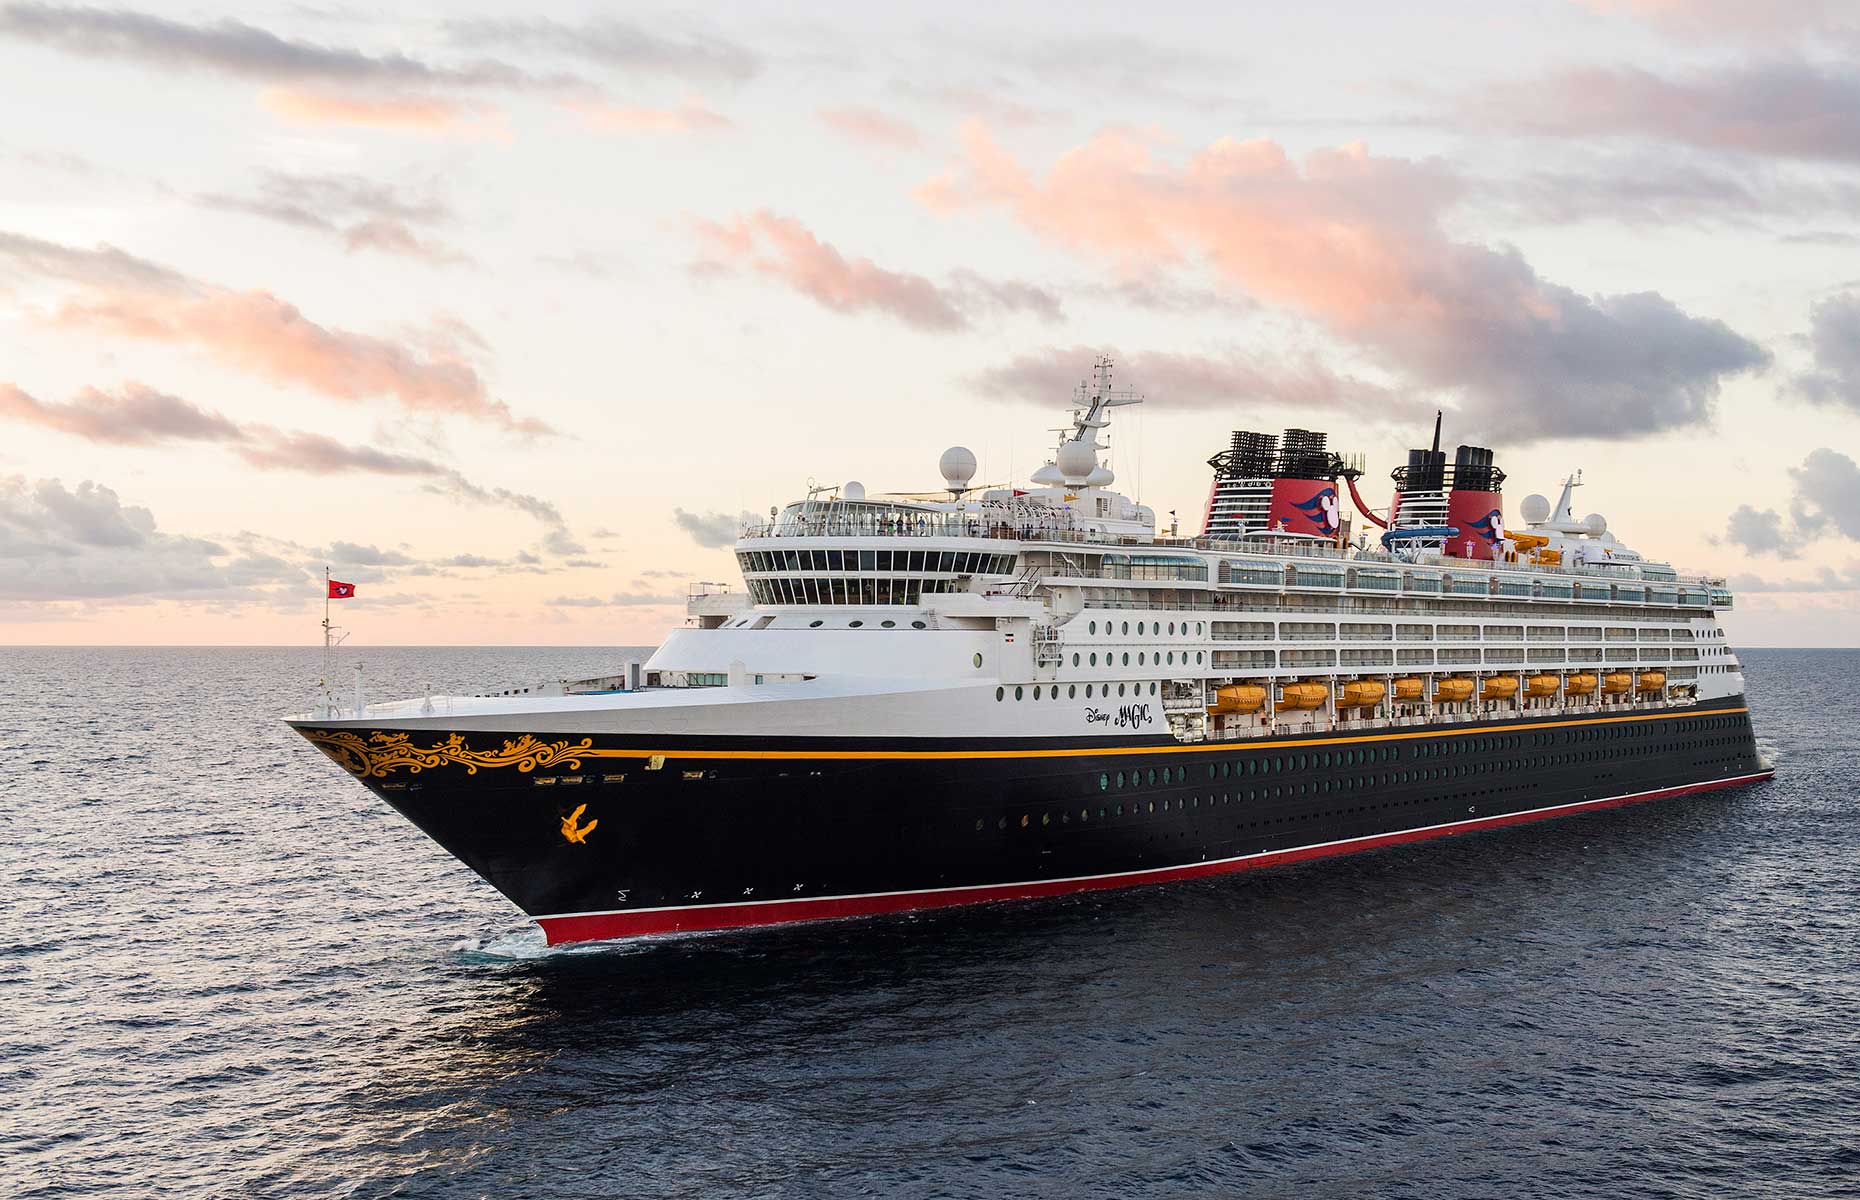 Disney Magic cruise ship (Image: Courtesy of Disney Cruise Line)